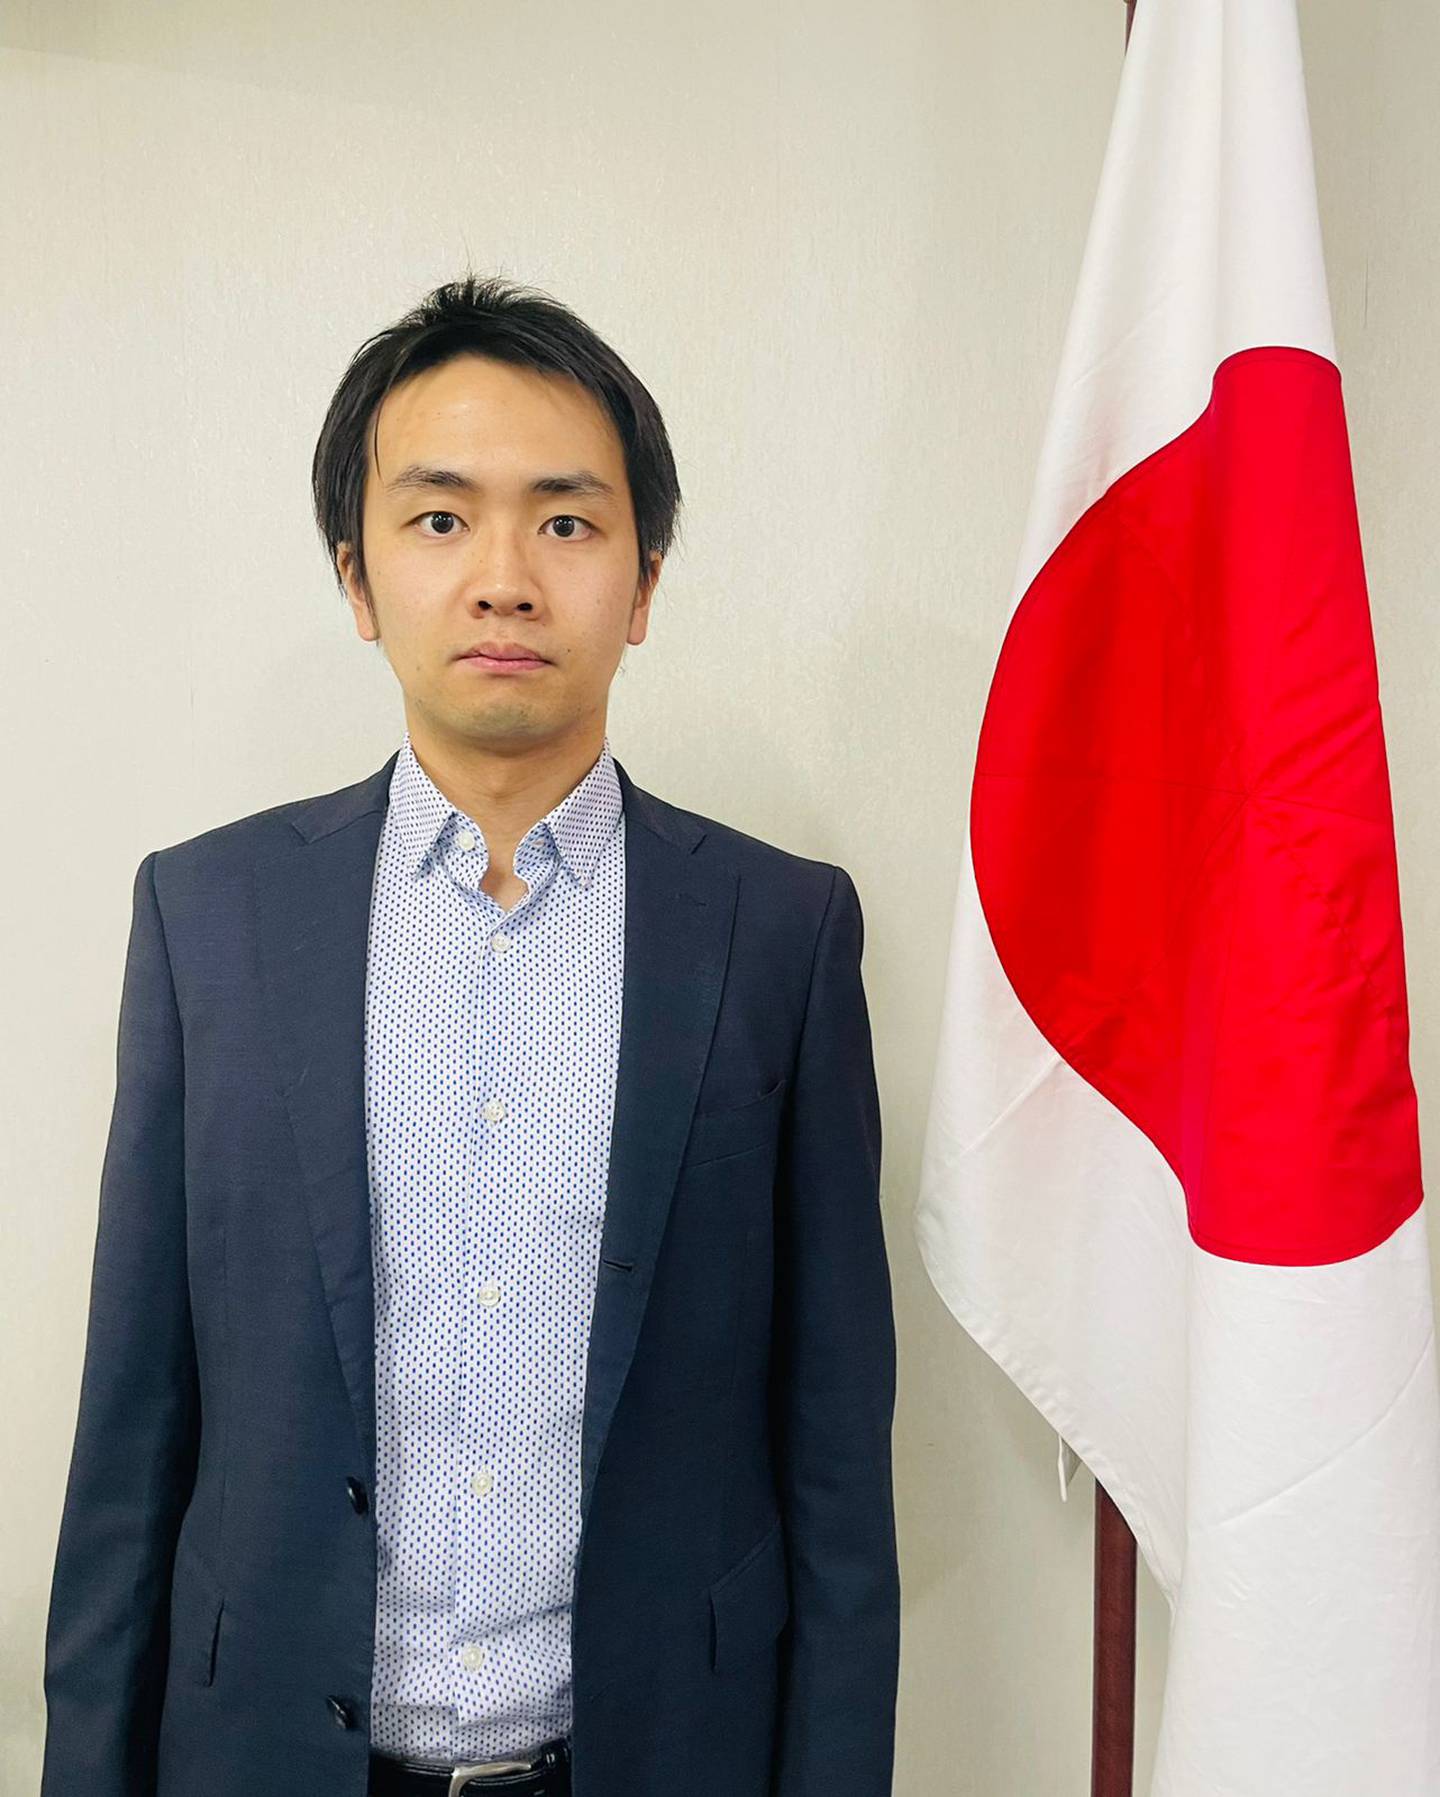 El segundo Secretario de la Sección de Economía de la Embajada del Japón en la República Argentina.dfd